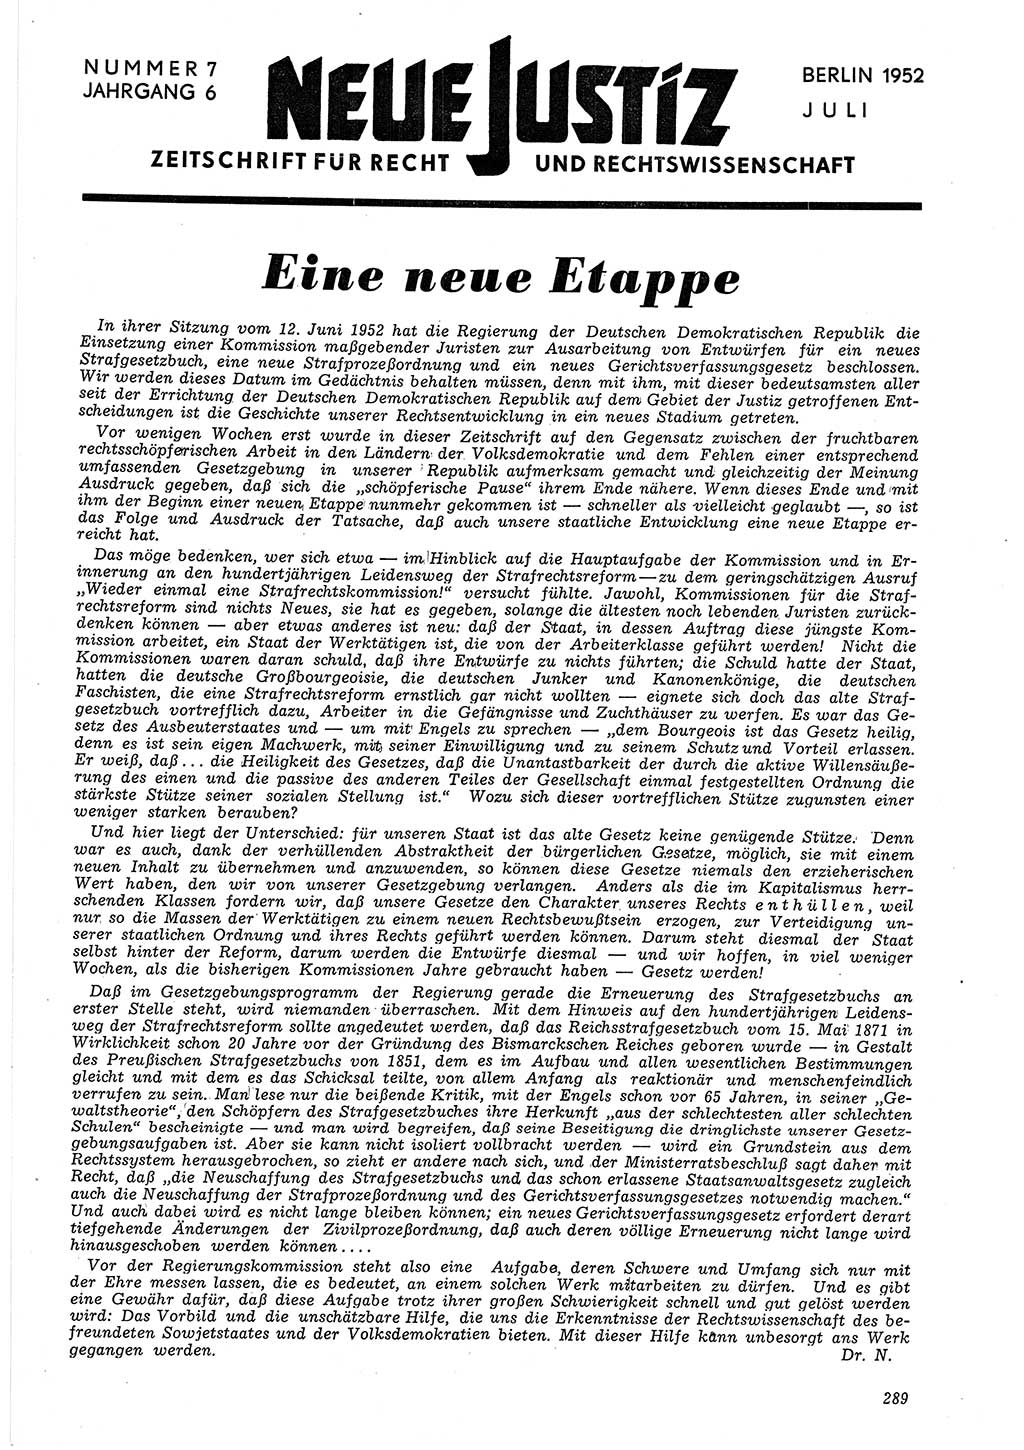 Neue Justiz (NJ), Zeitschrift für Recht und Rechtswissenschaft [Deutsche Demokratische Republik (DDR)], 6. Jahrgang 1952, Seite 289 (NJ DDR 1952, S. 289)